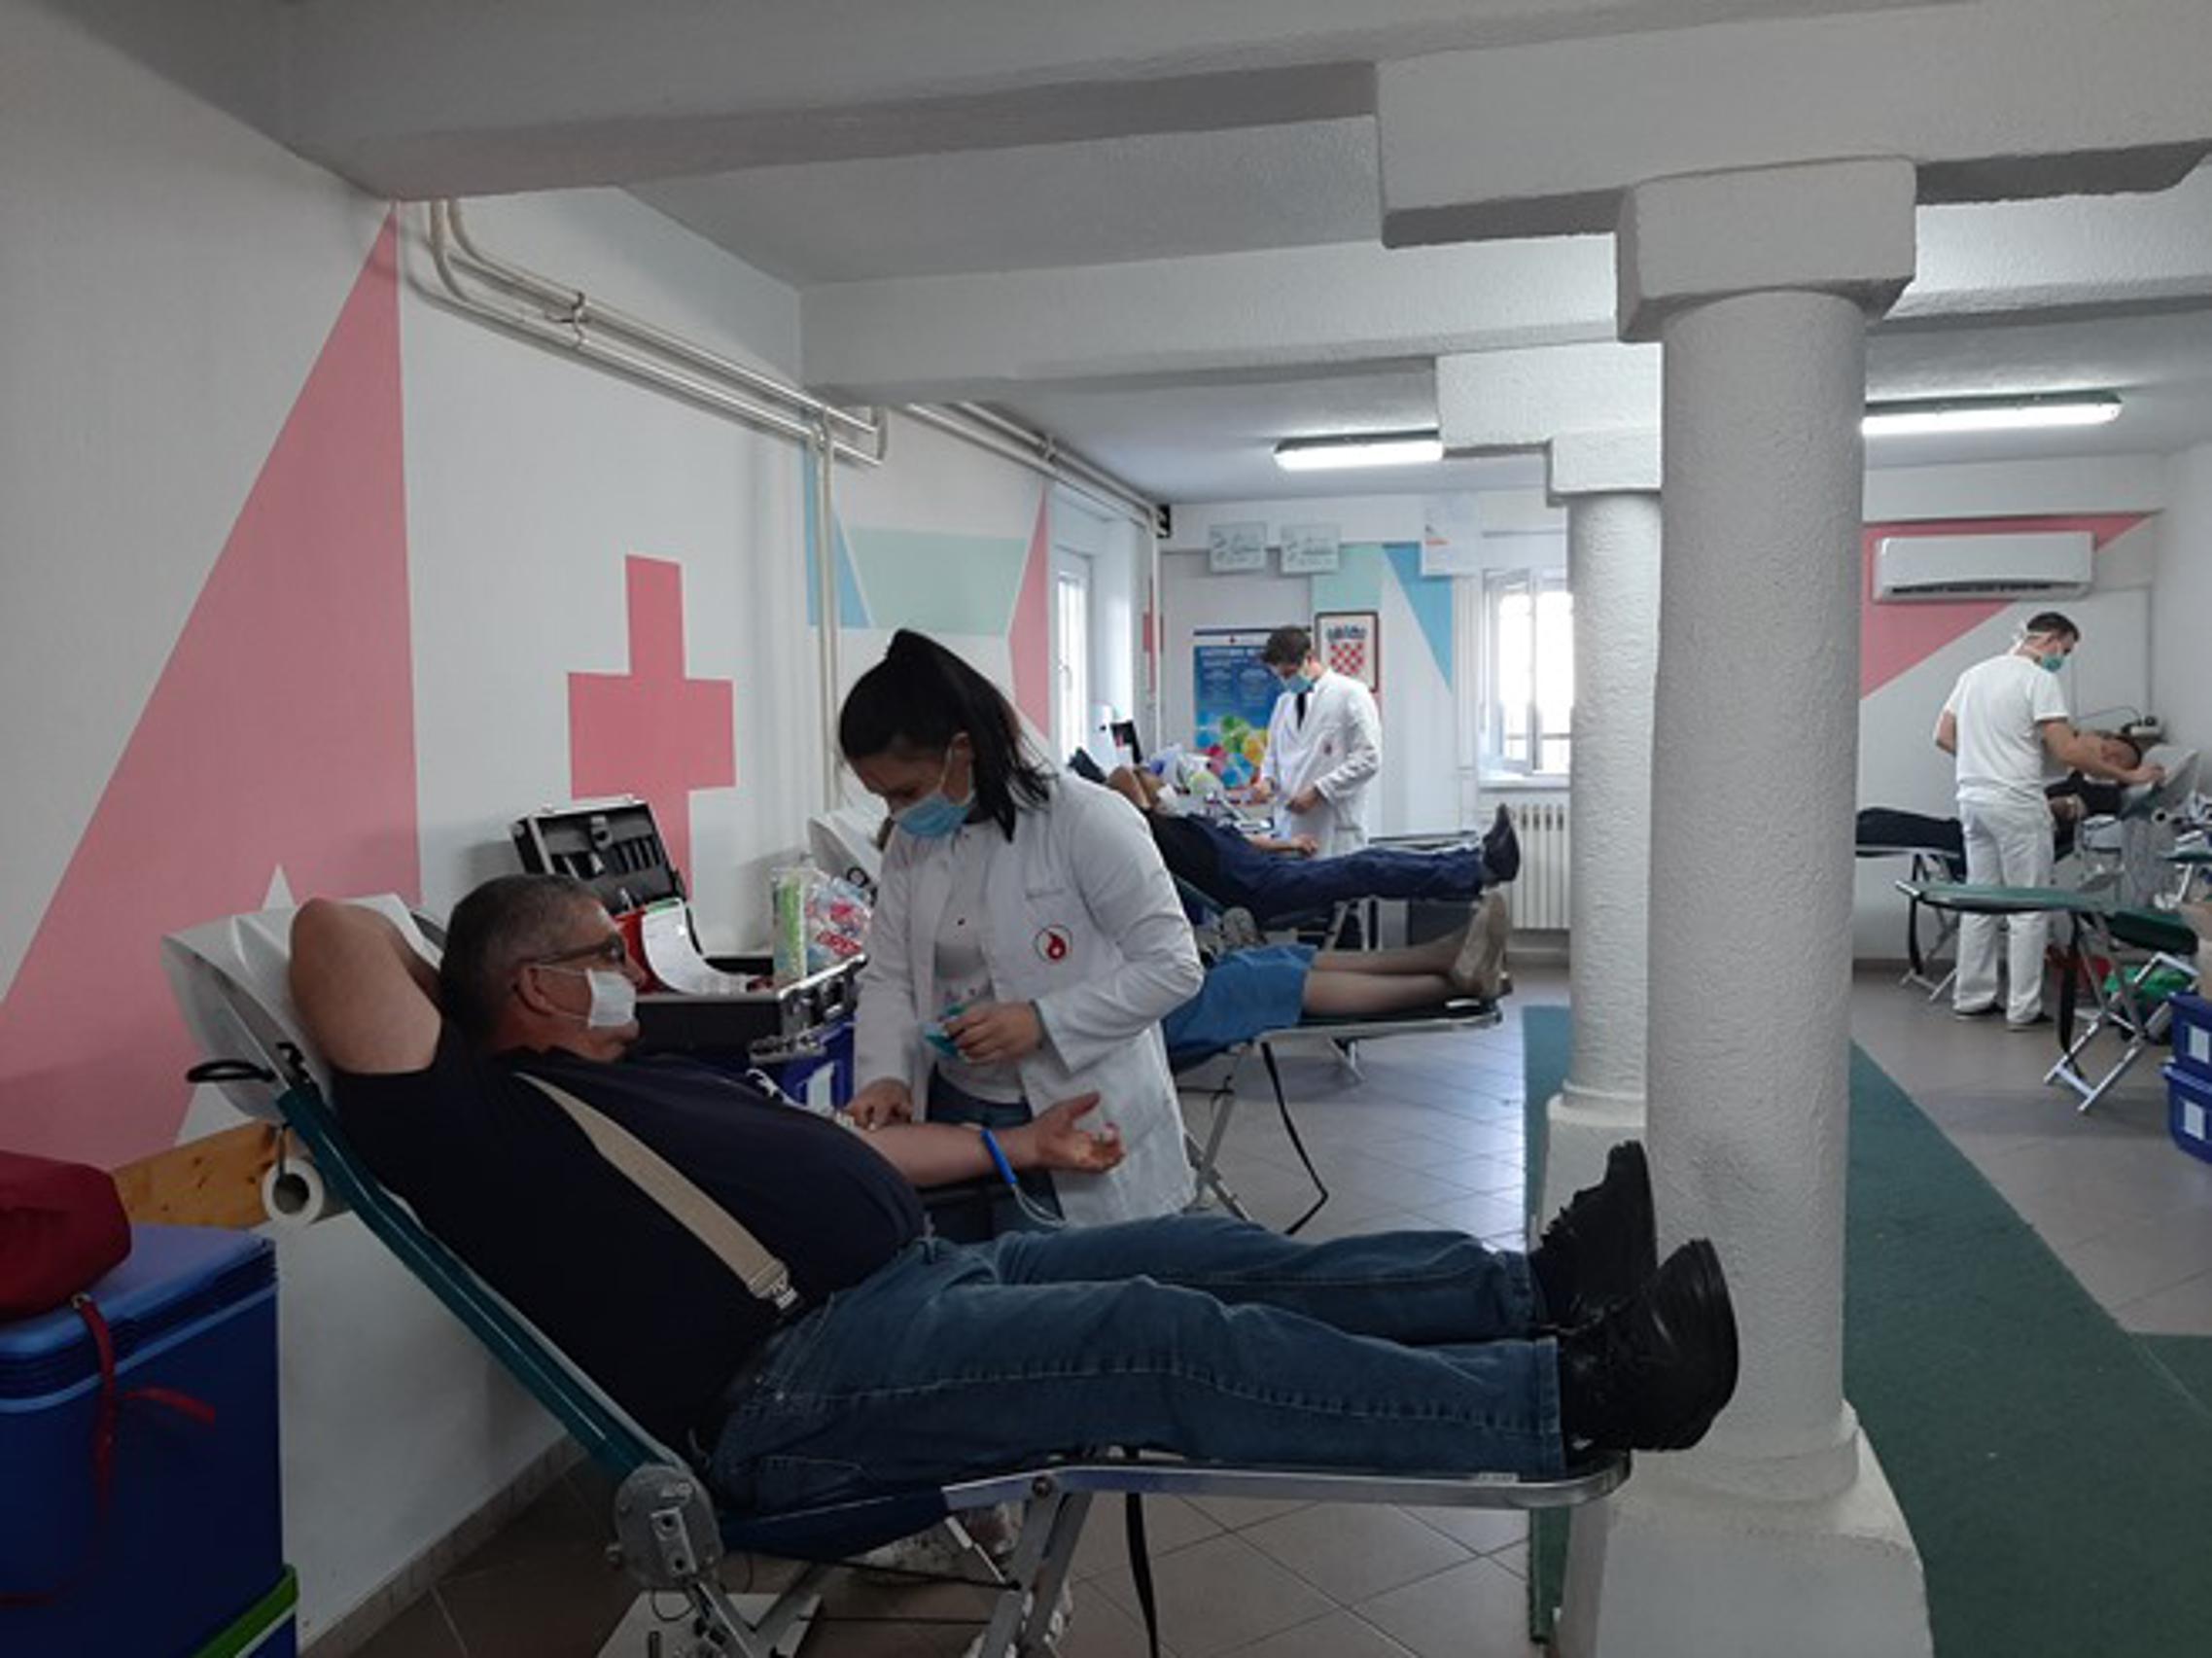 Akcija dobrovoljnog darivanja krvi